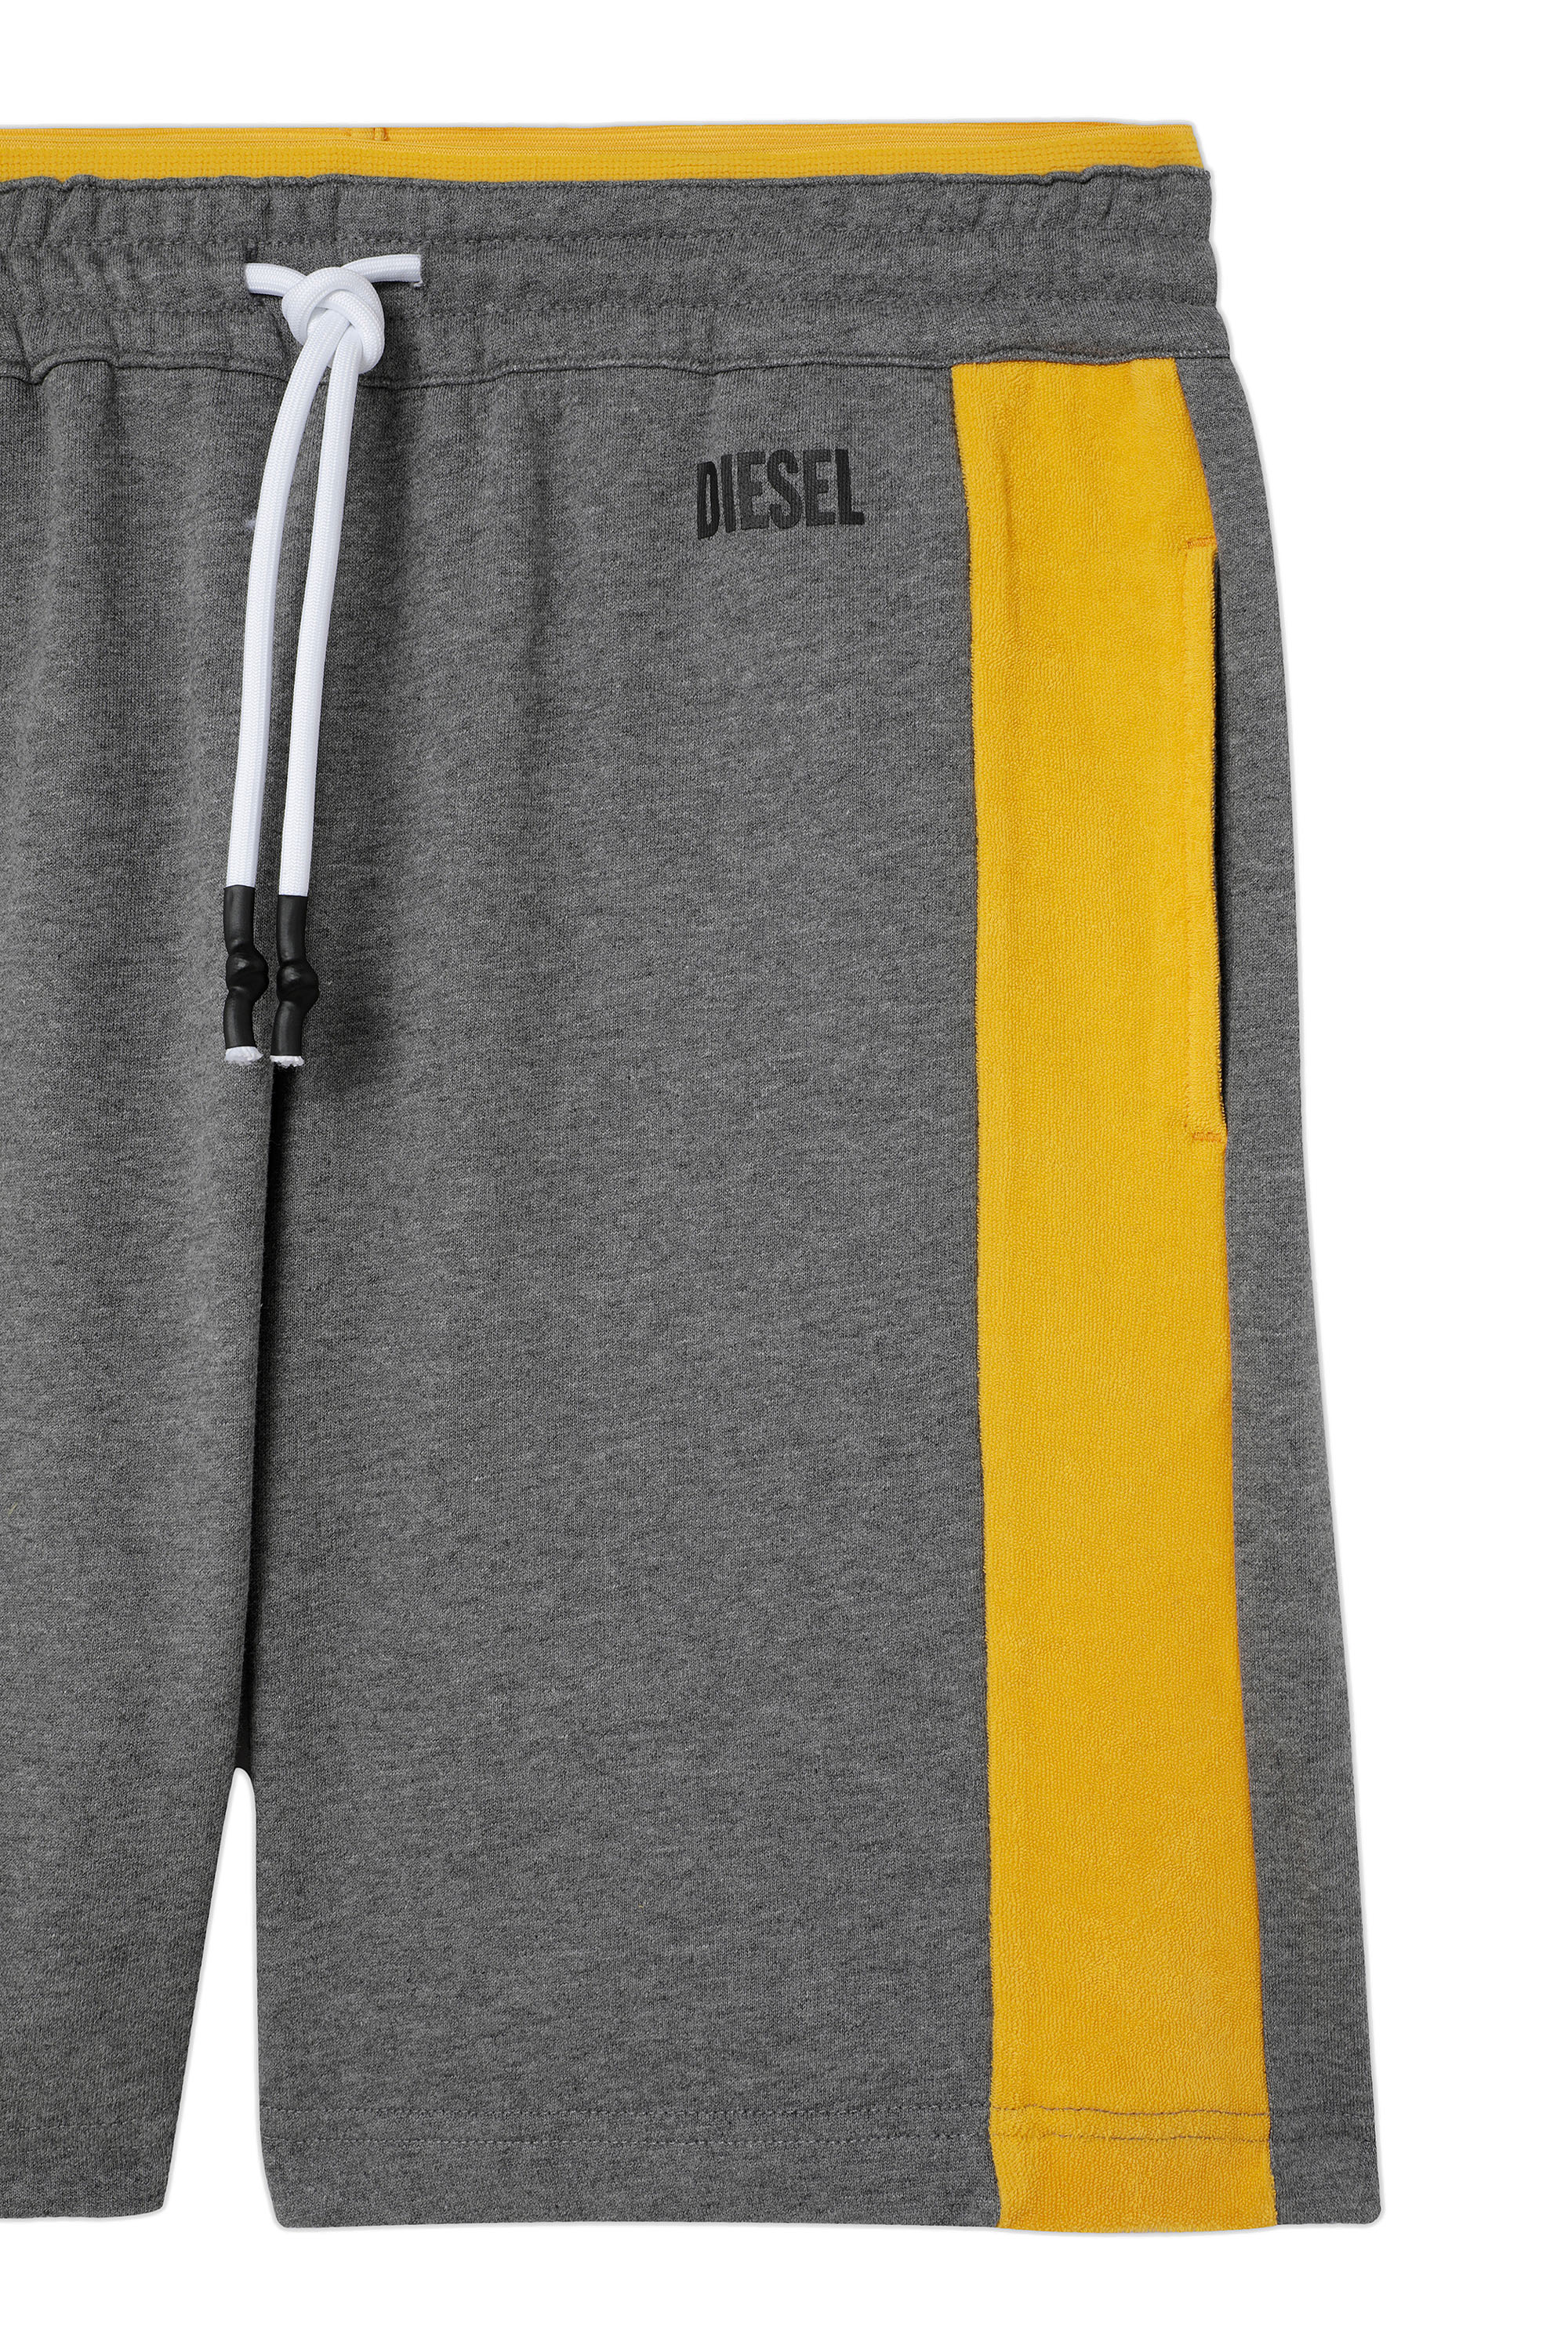 Diesel - UMLB-PAN-SP, Grey/Yellow - Image 3